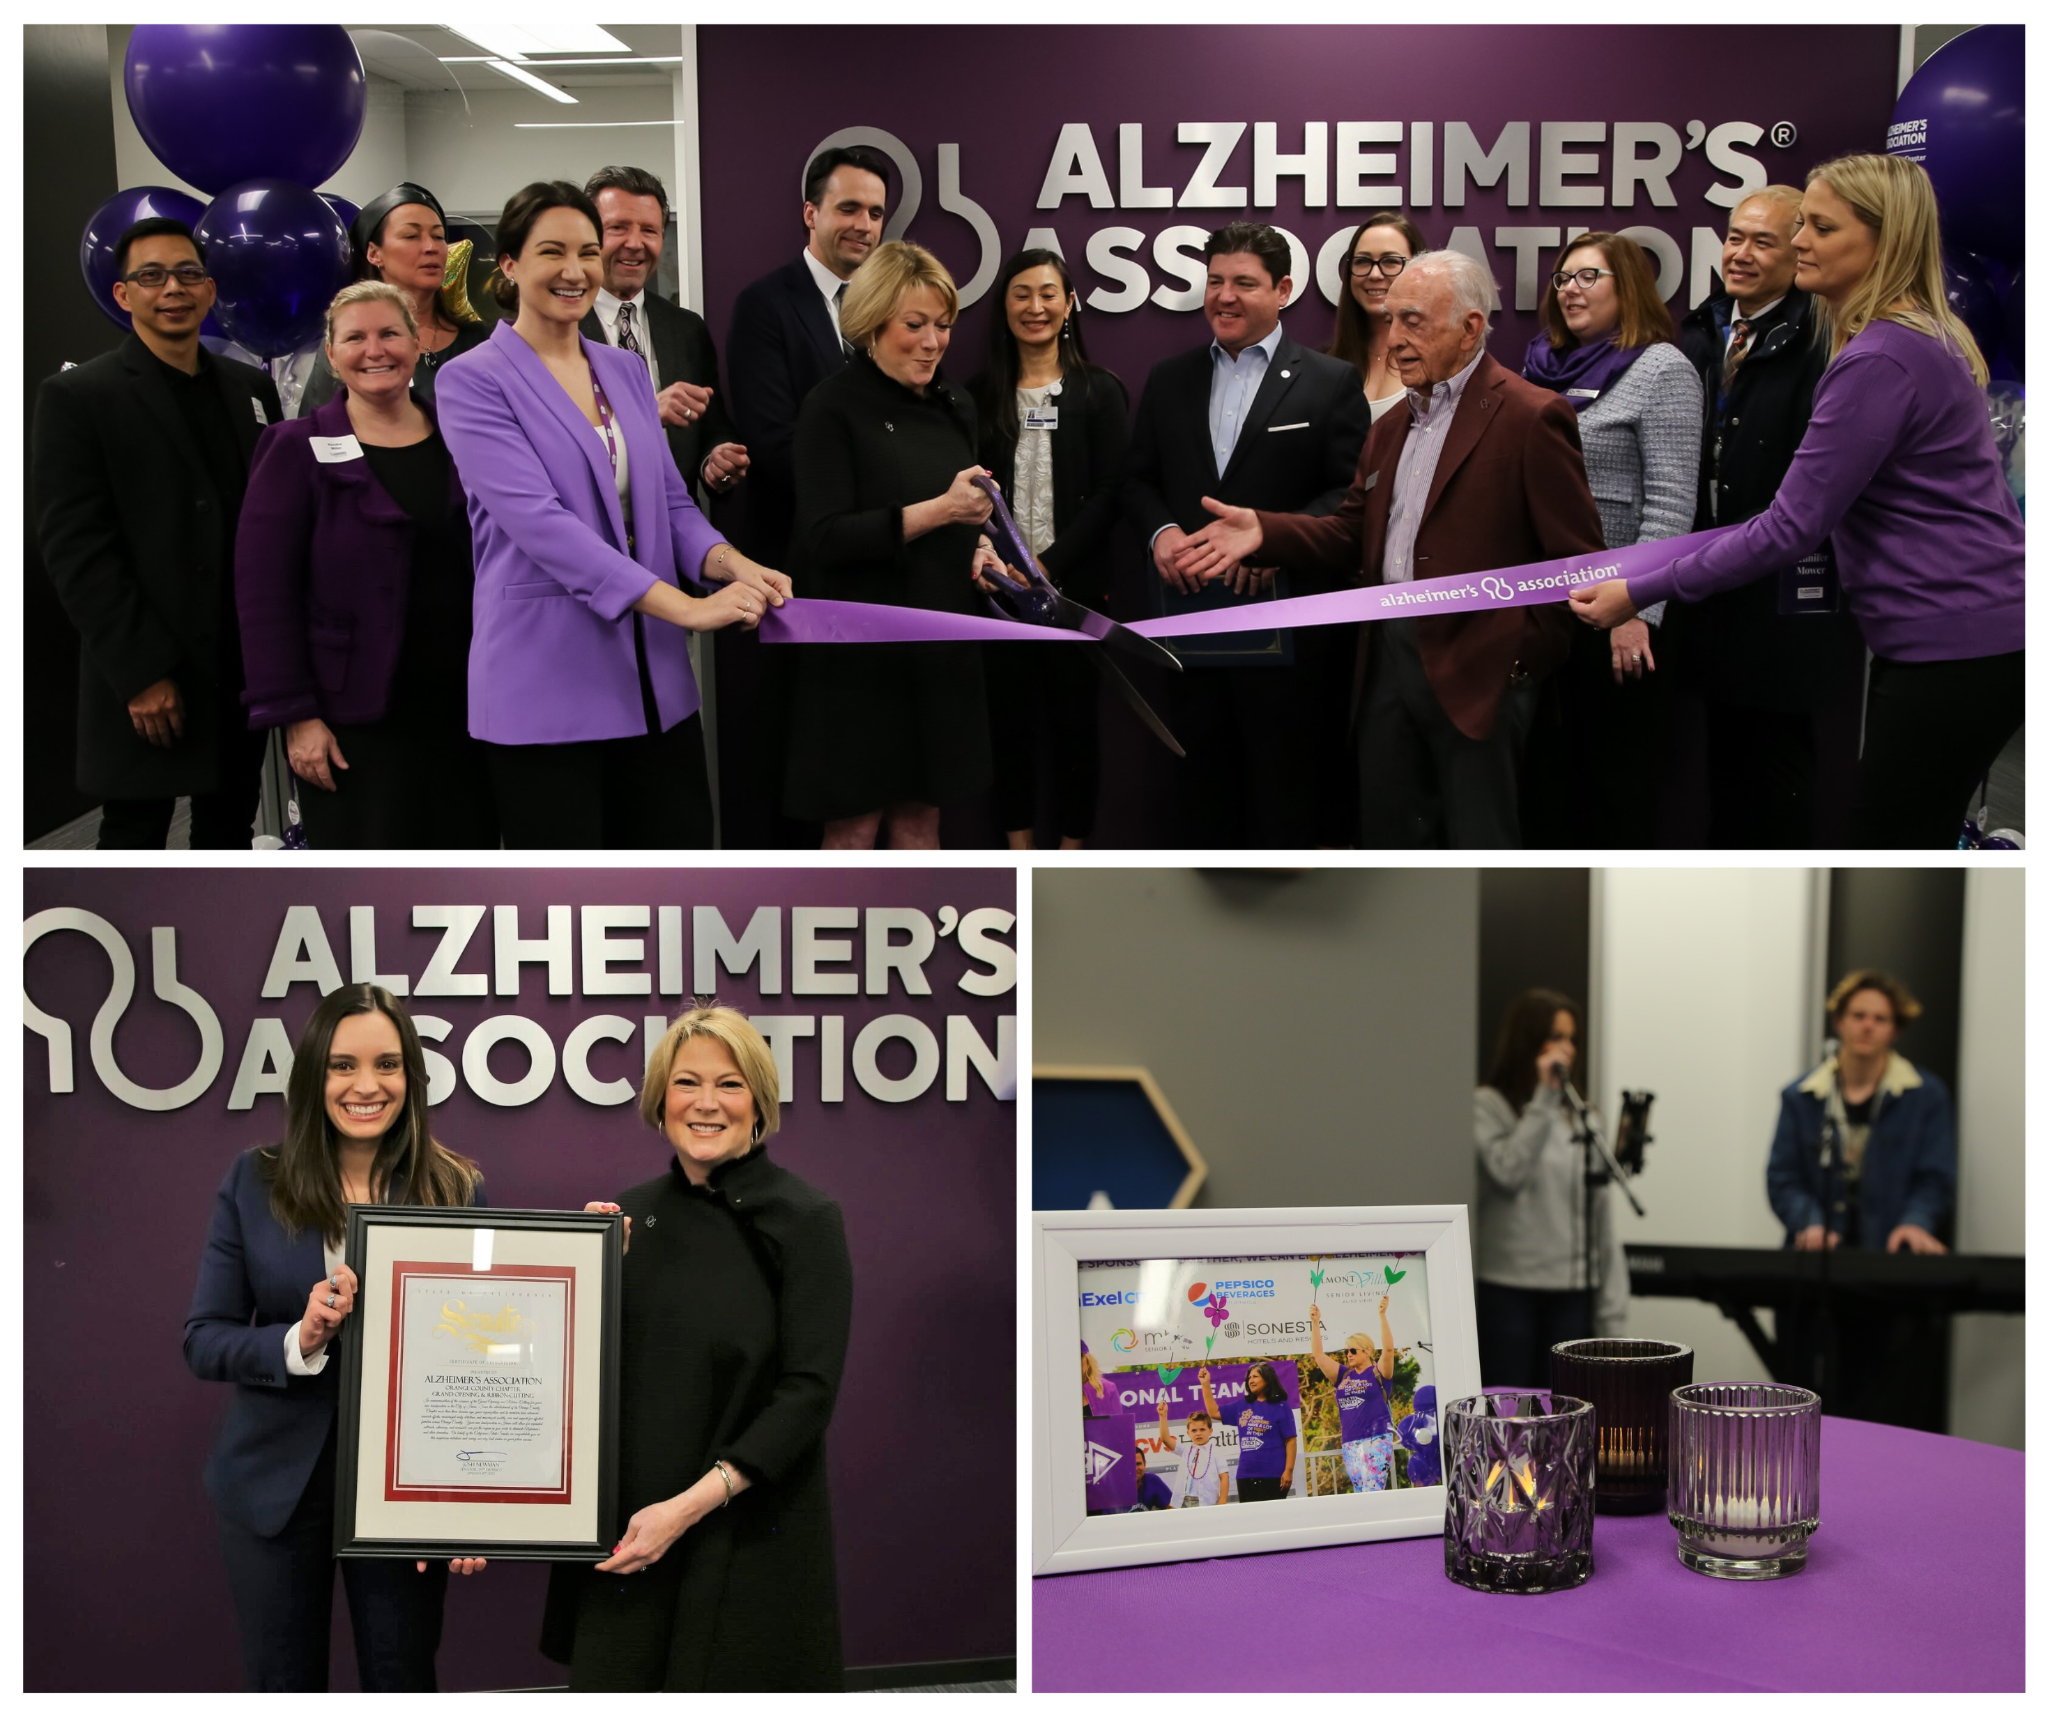 Alzheimer's Association Event